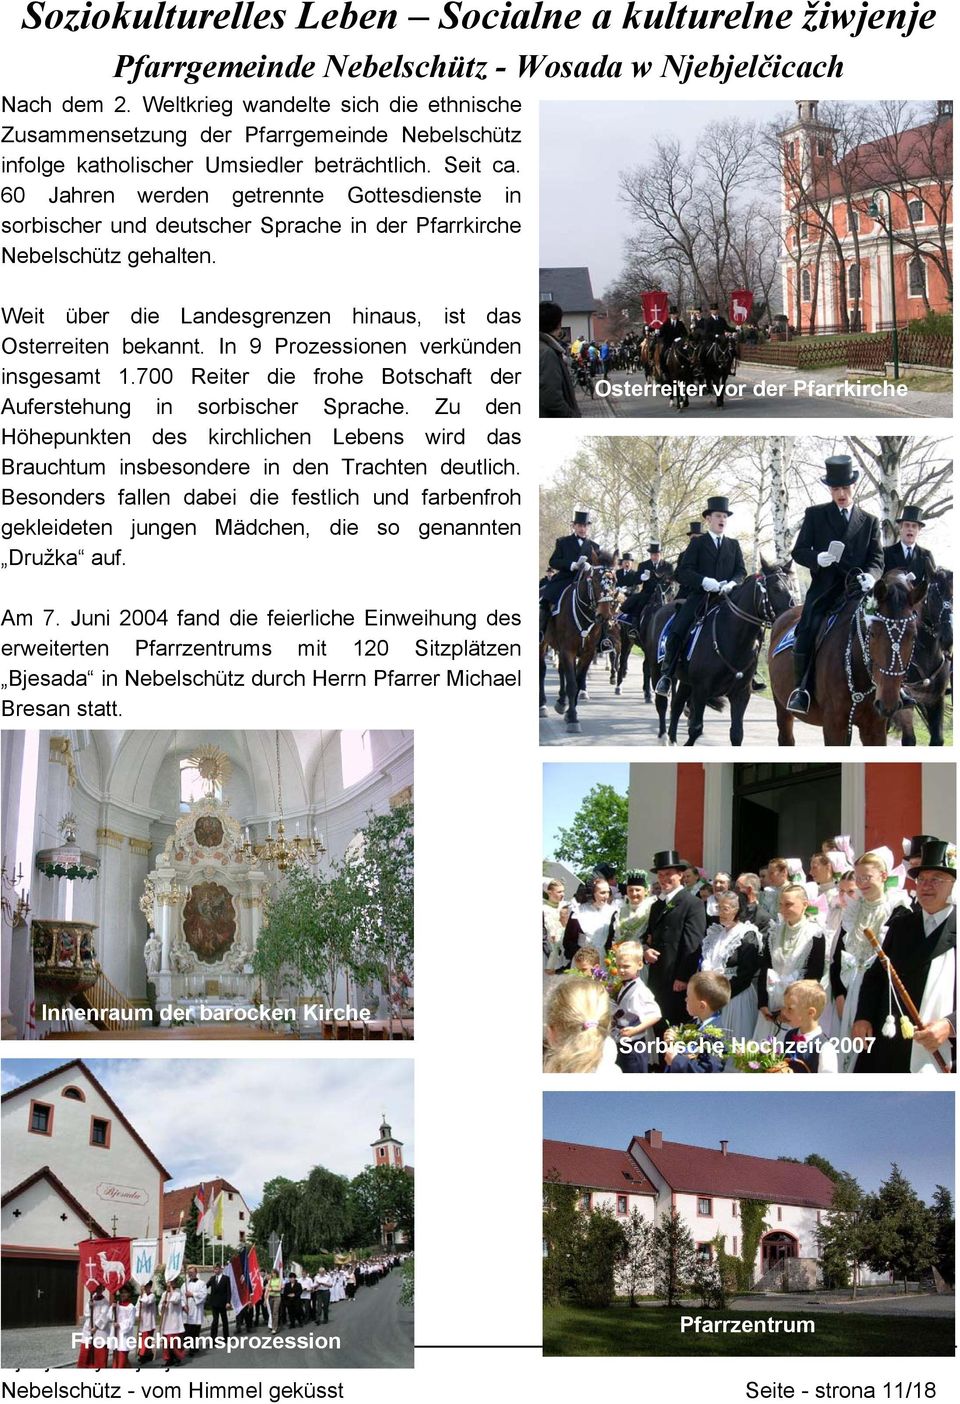 60 Jahren werden getrennte Gottesdienste in sorbischer und deutscher Sprache in der Pfarrkirche Nebelschütz gehalten. Weit über die Landesgrenzen hinaus, ist das Osterreiten bekannt.